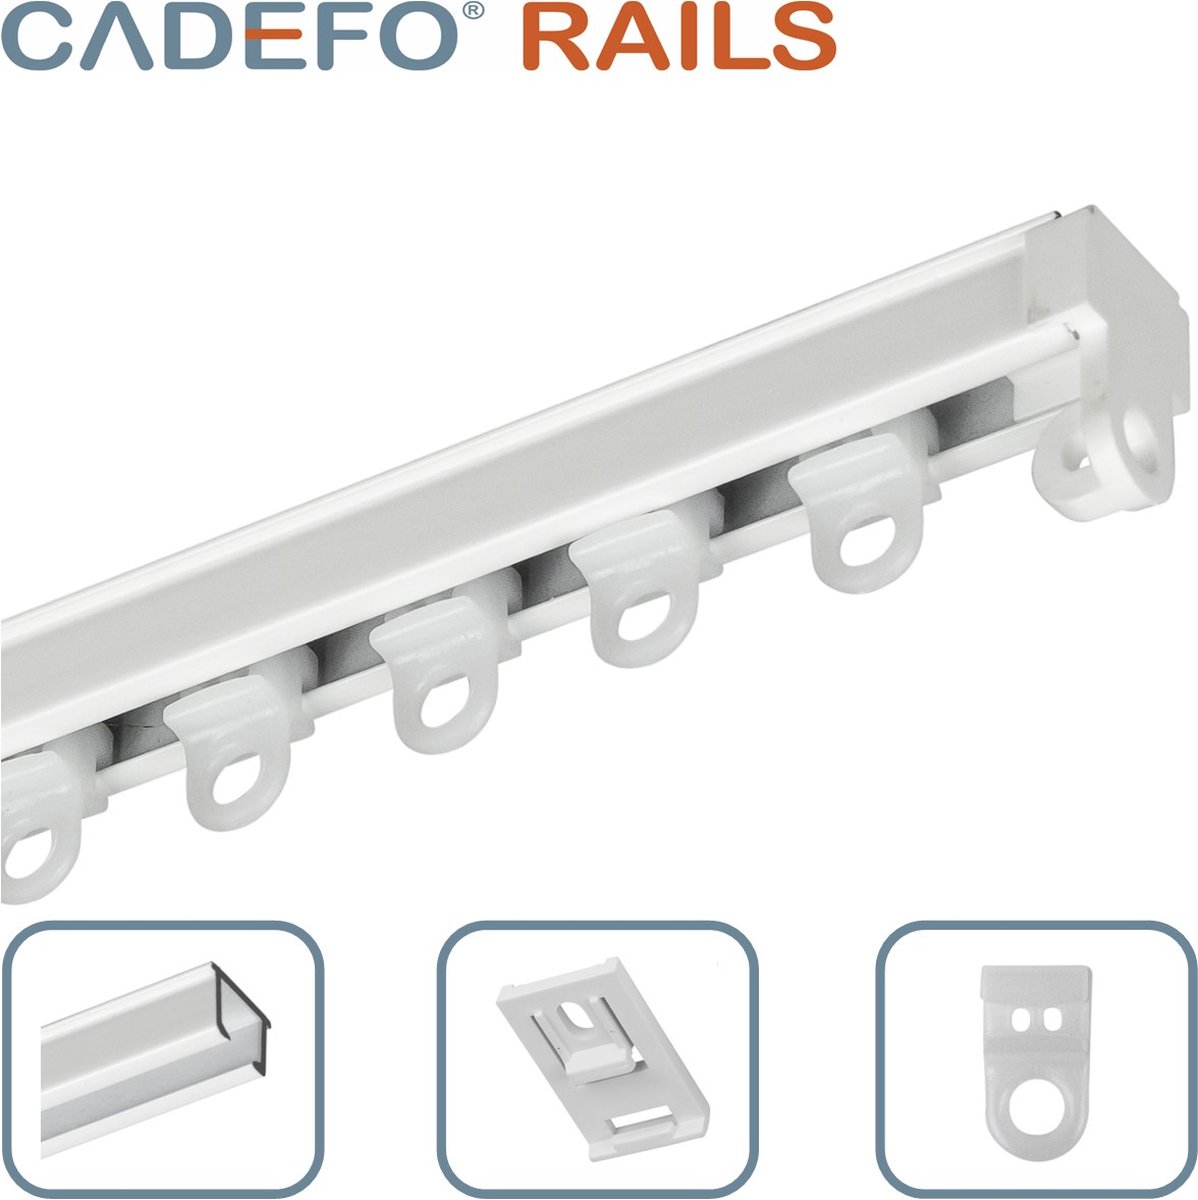 CADEFO RAILS (451 - 500 cm) Gordijnrails - Compleet op maat! - UIT 1 STUK - Leverbaar tot 6 meter - Plafondbevestiging - Lengte 497 cm